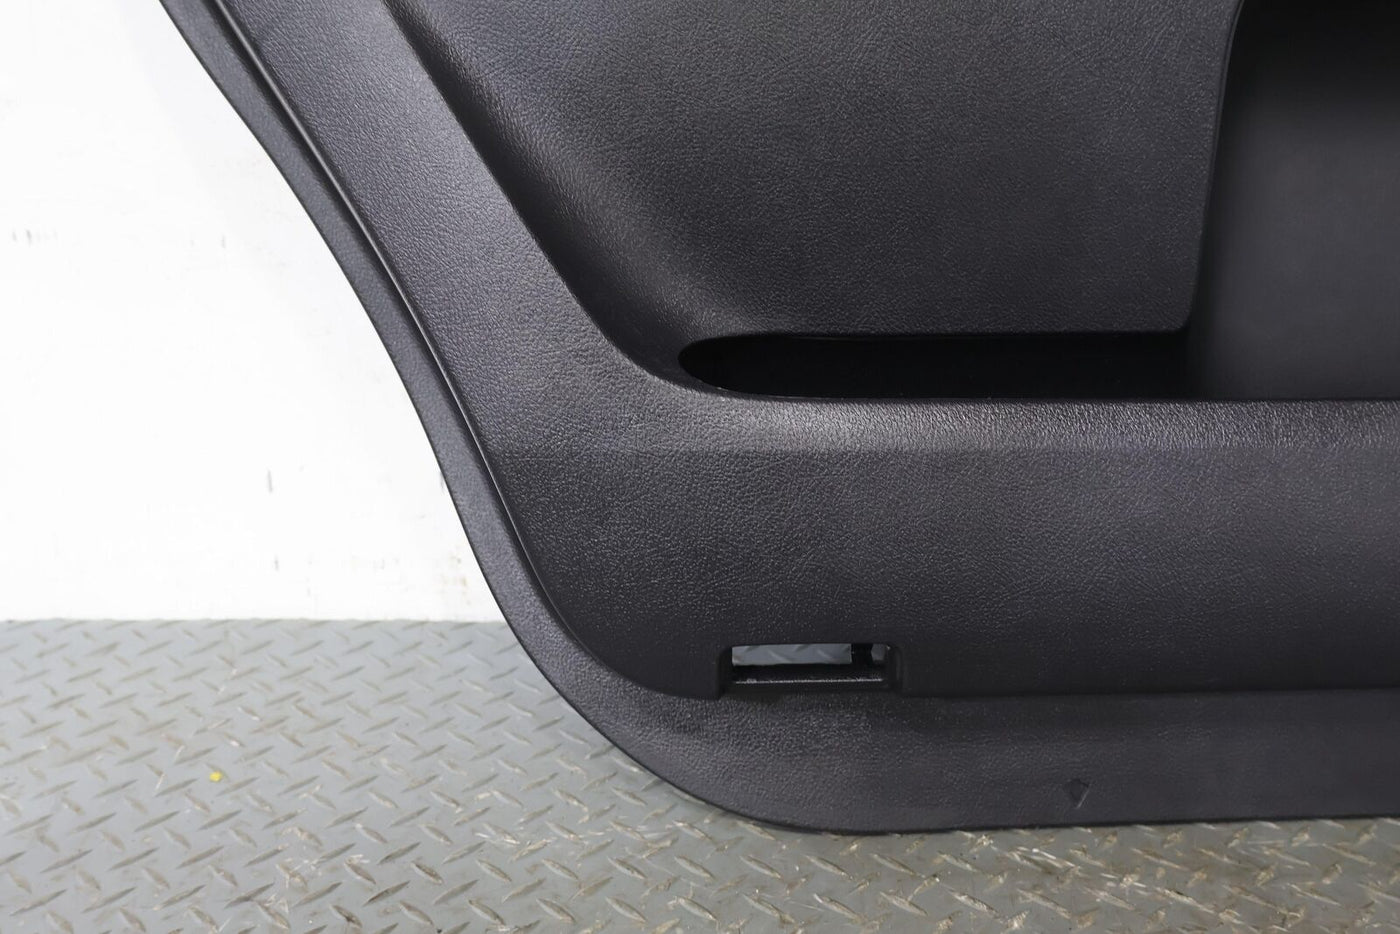 08-20 Toyota Sequoia Platinum Rear Left LH Interior Door Trim Panel (Graphite)